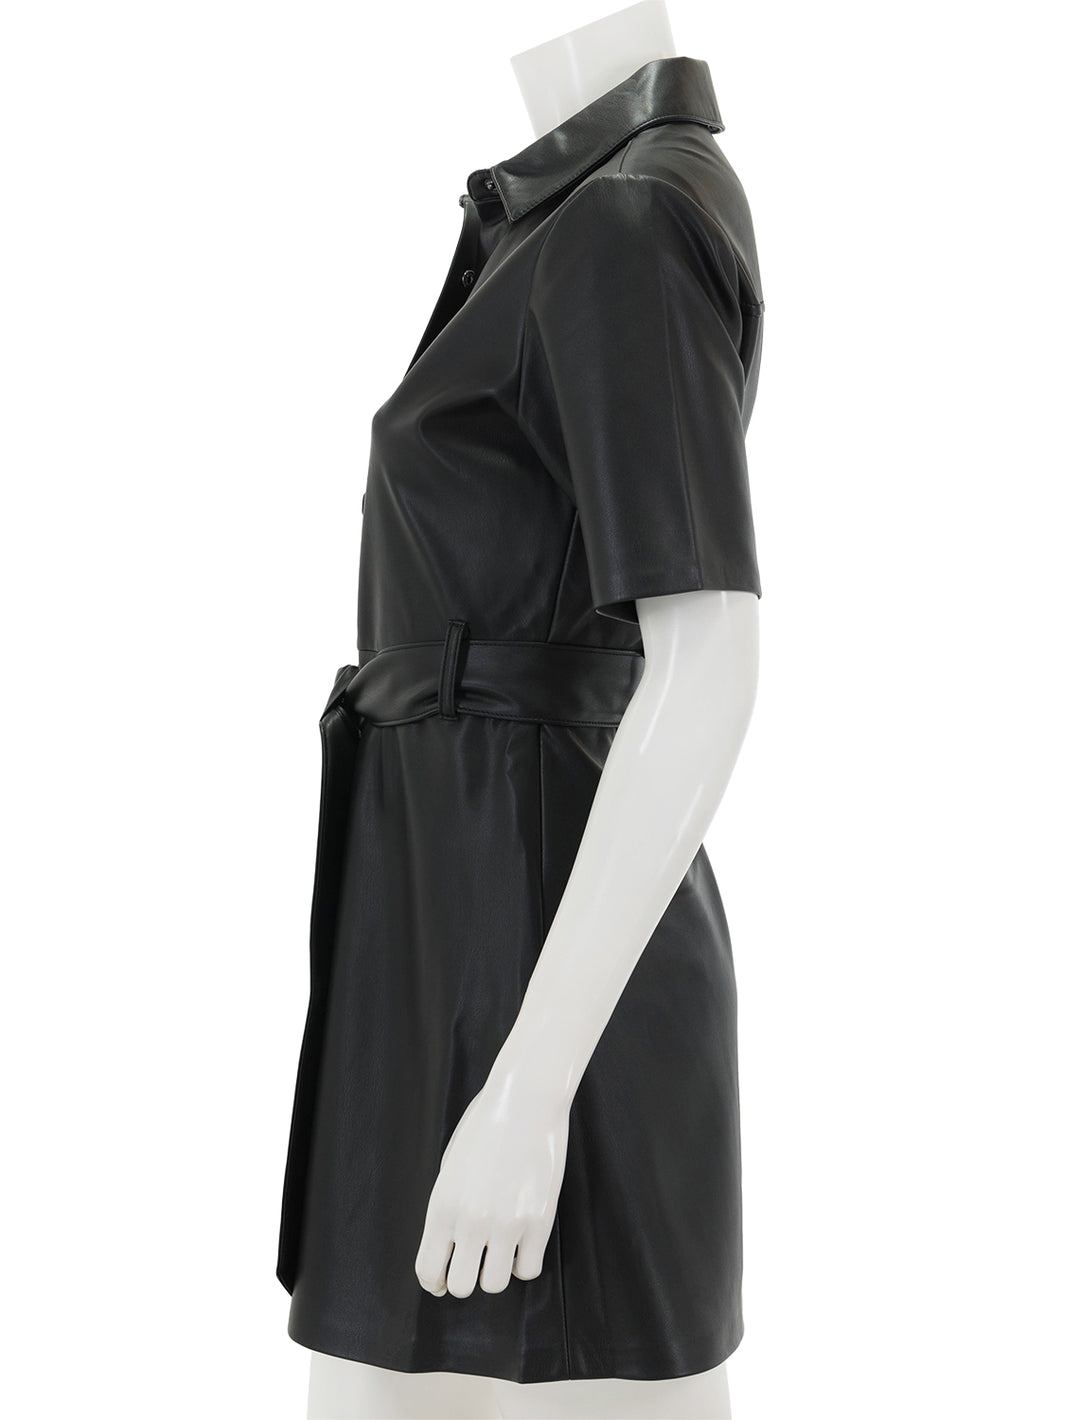 Side view of Steve Madden's jolene dress in black.